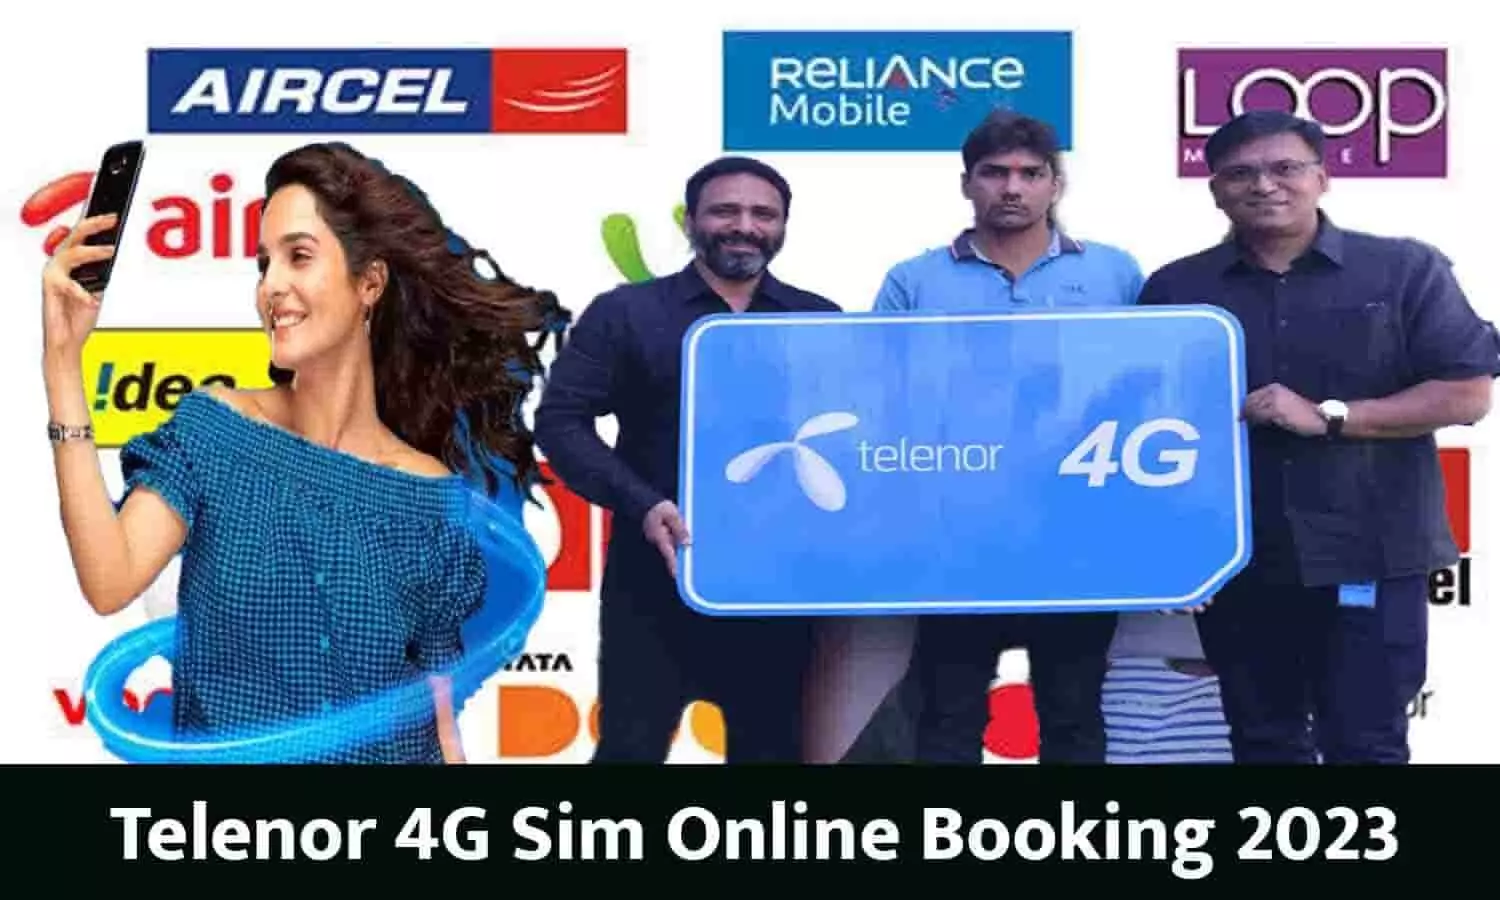 Telenor 4G Sim Online Booking 2023: दिवाली ऑफर्स! मात्र ₹10 मैं लाइफटाइम फ्री इंटरनेट की बुकिंग शुरू, फटाफट करे आप भी बुक